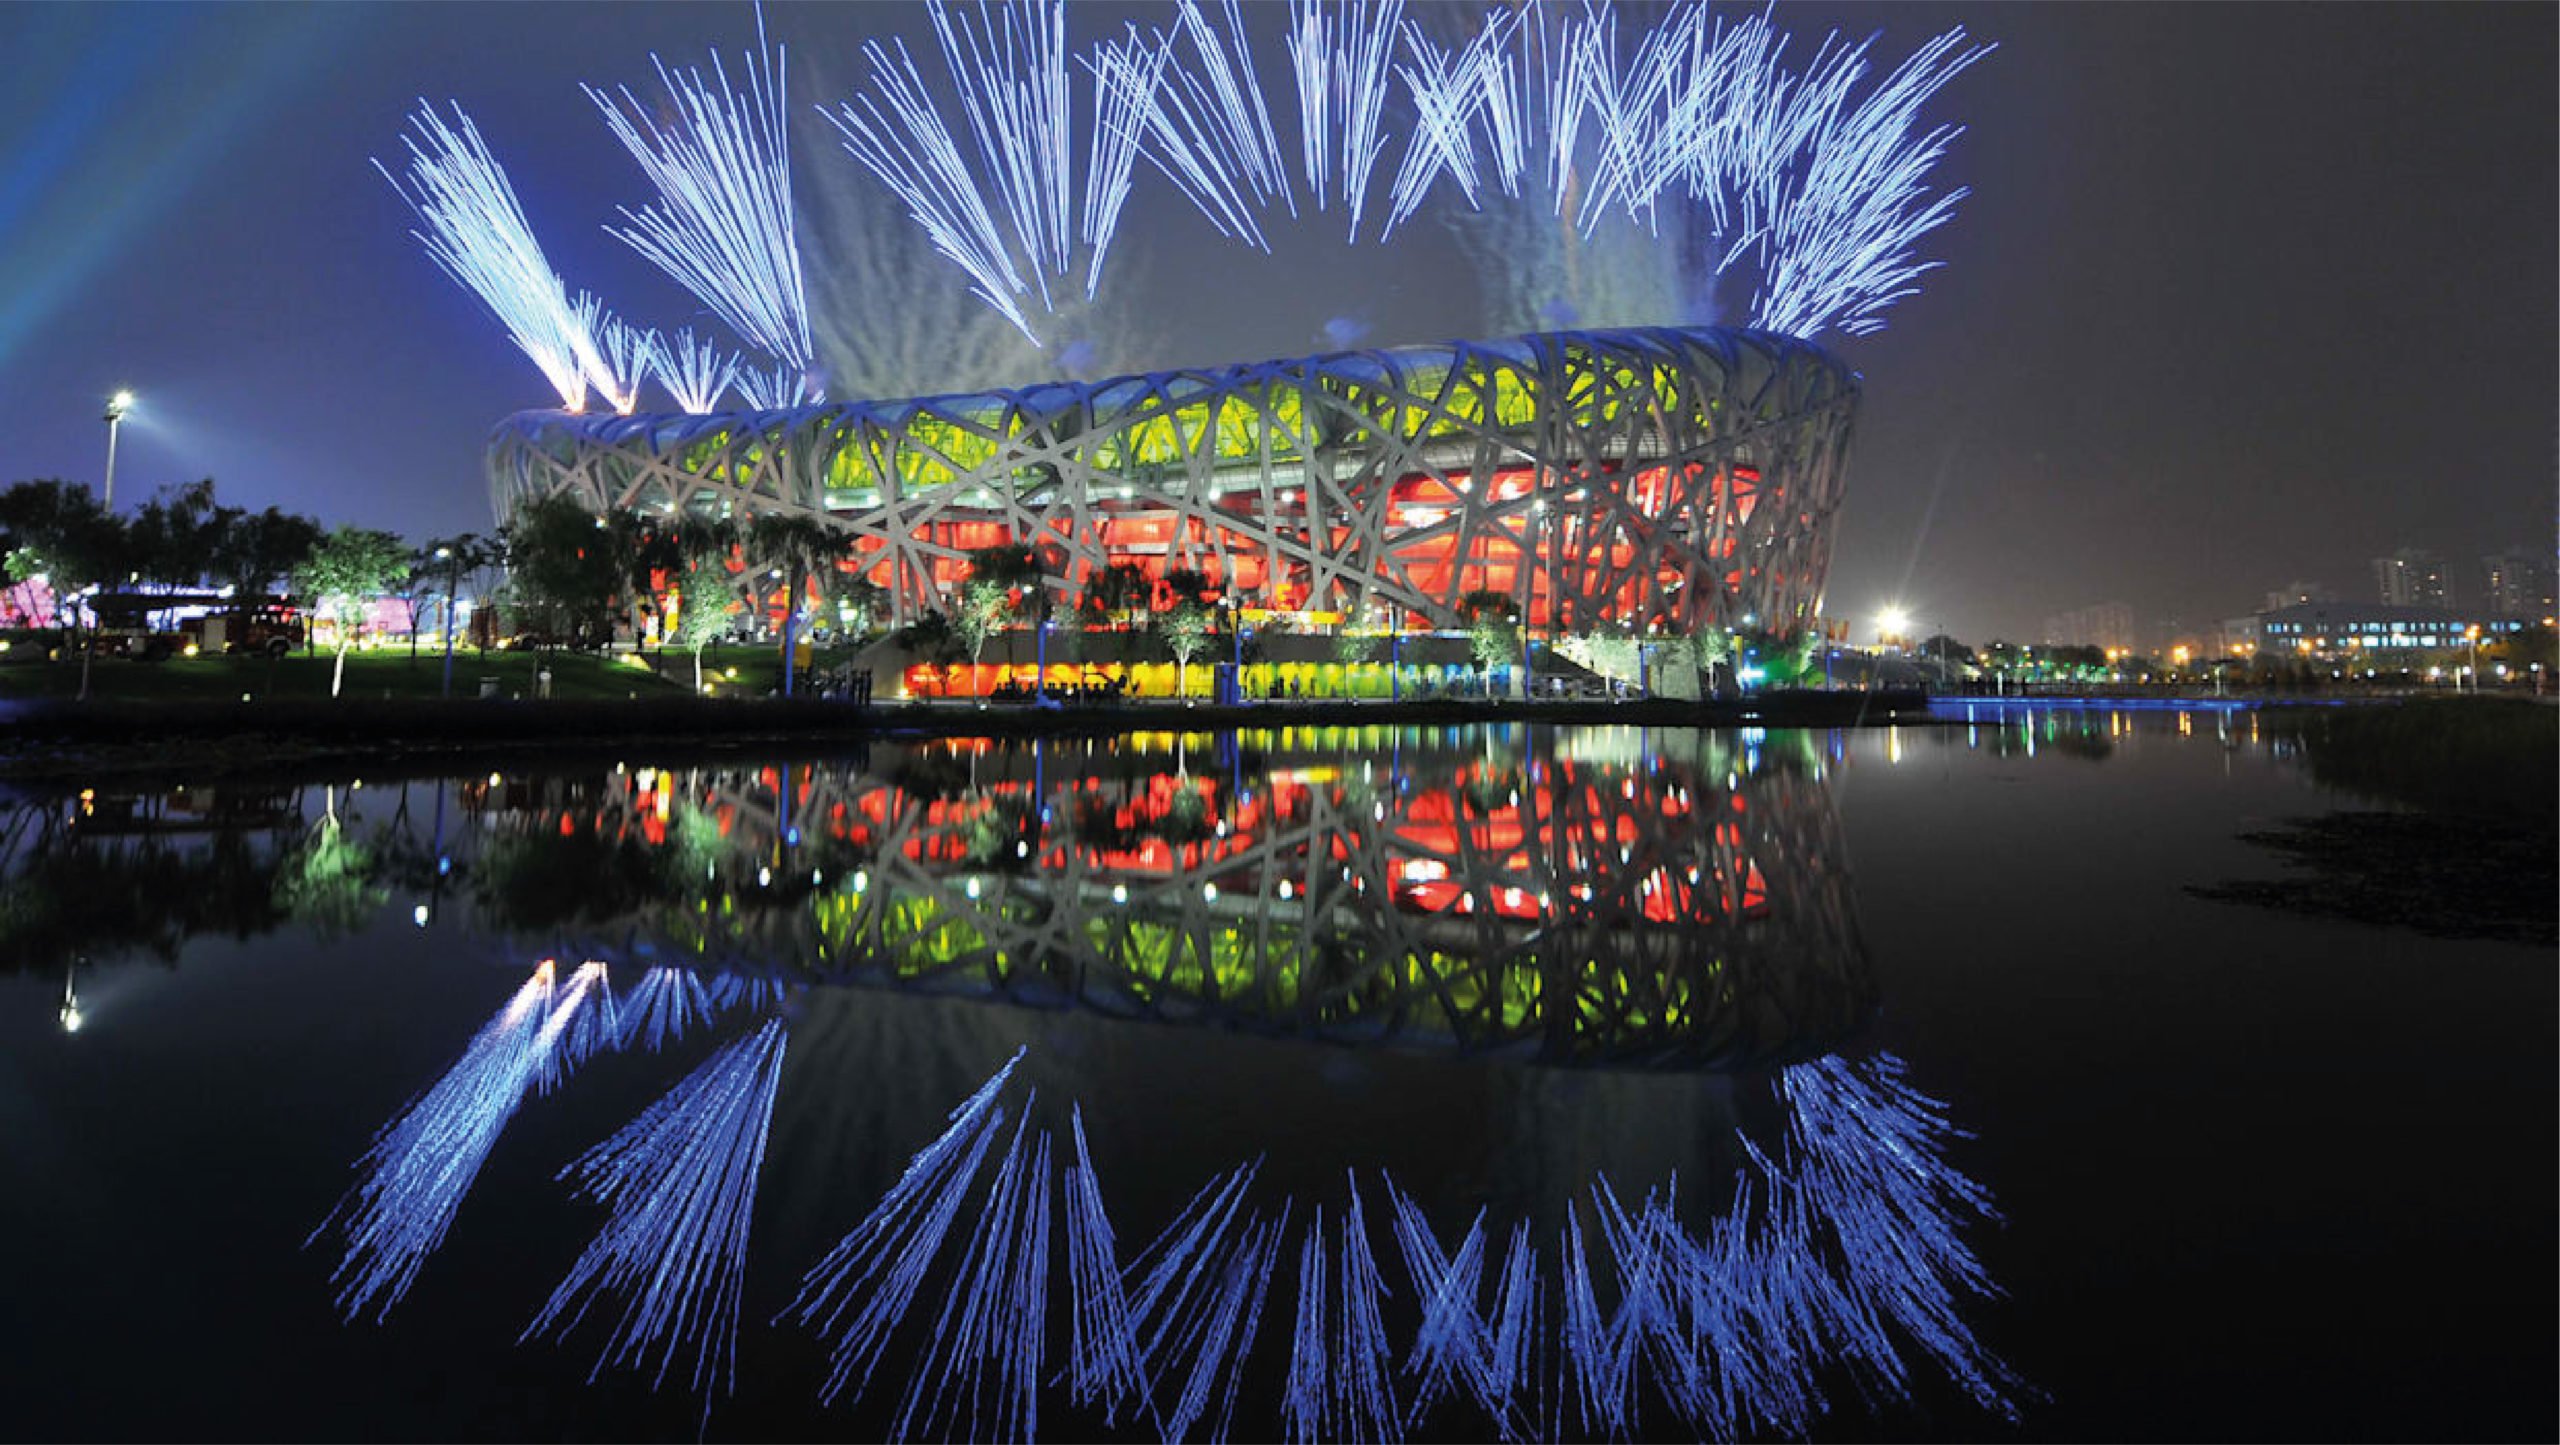 Organizadores de Juegos Olímpicos de Pekín 2022 analizan aforo en pruebas